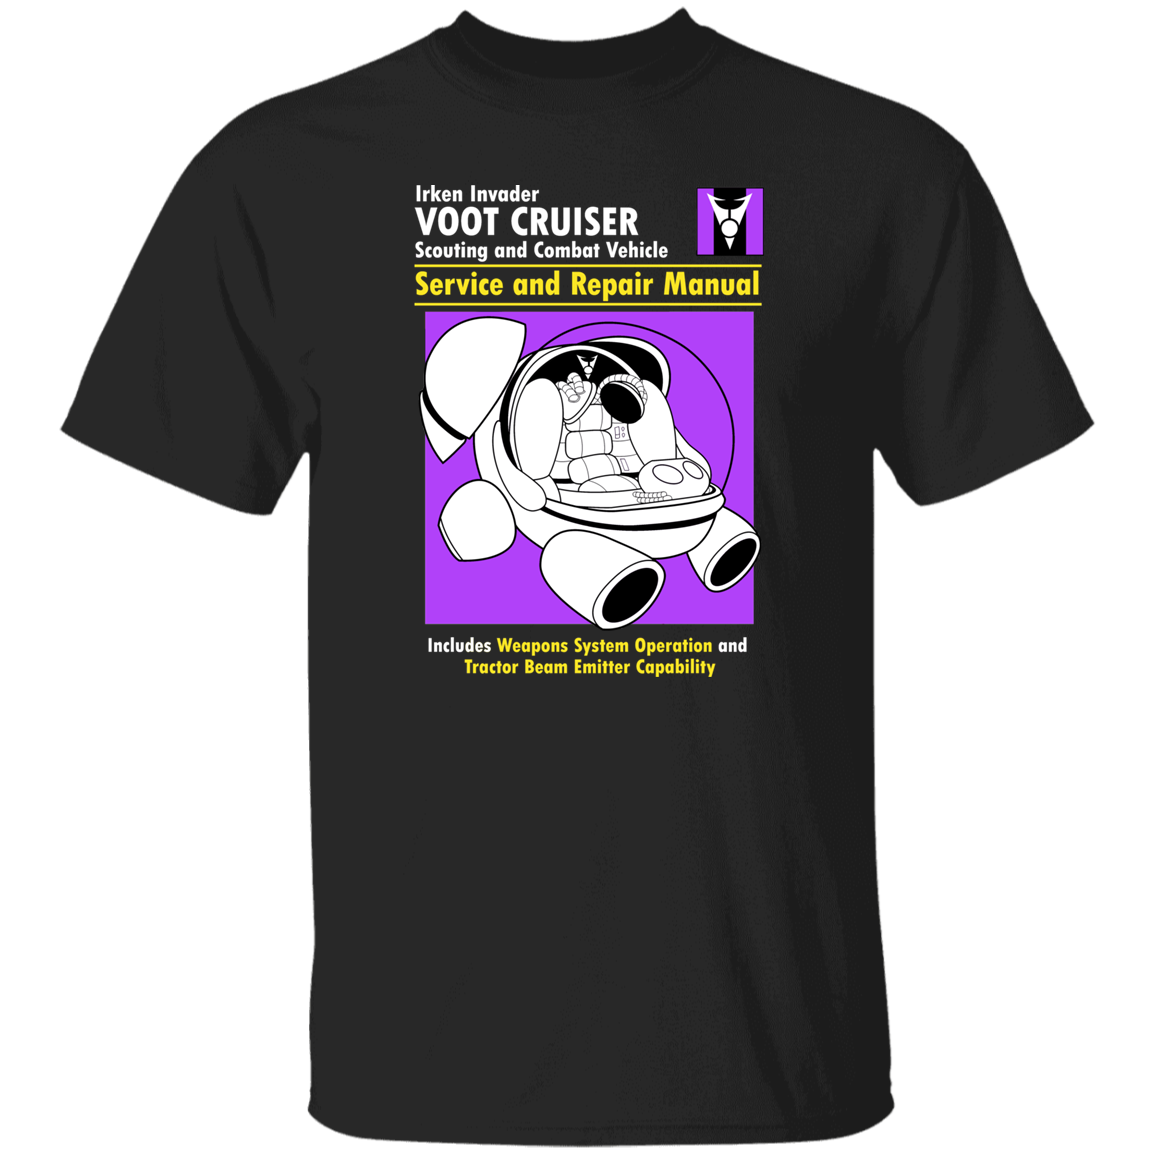 Voot Cruiser Manual T-Shirt